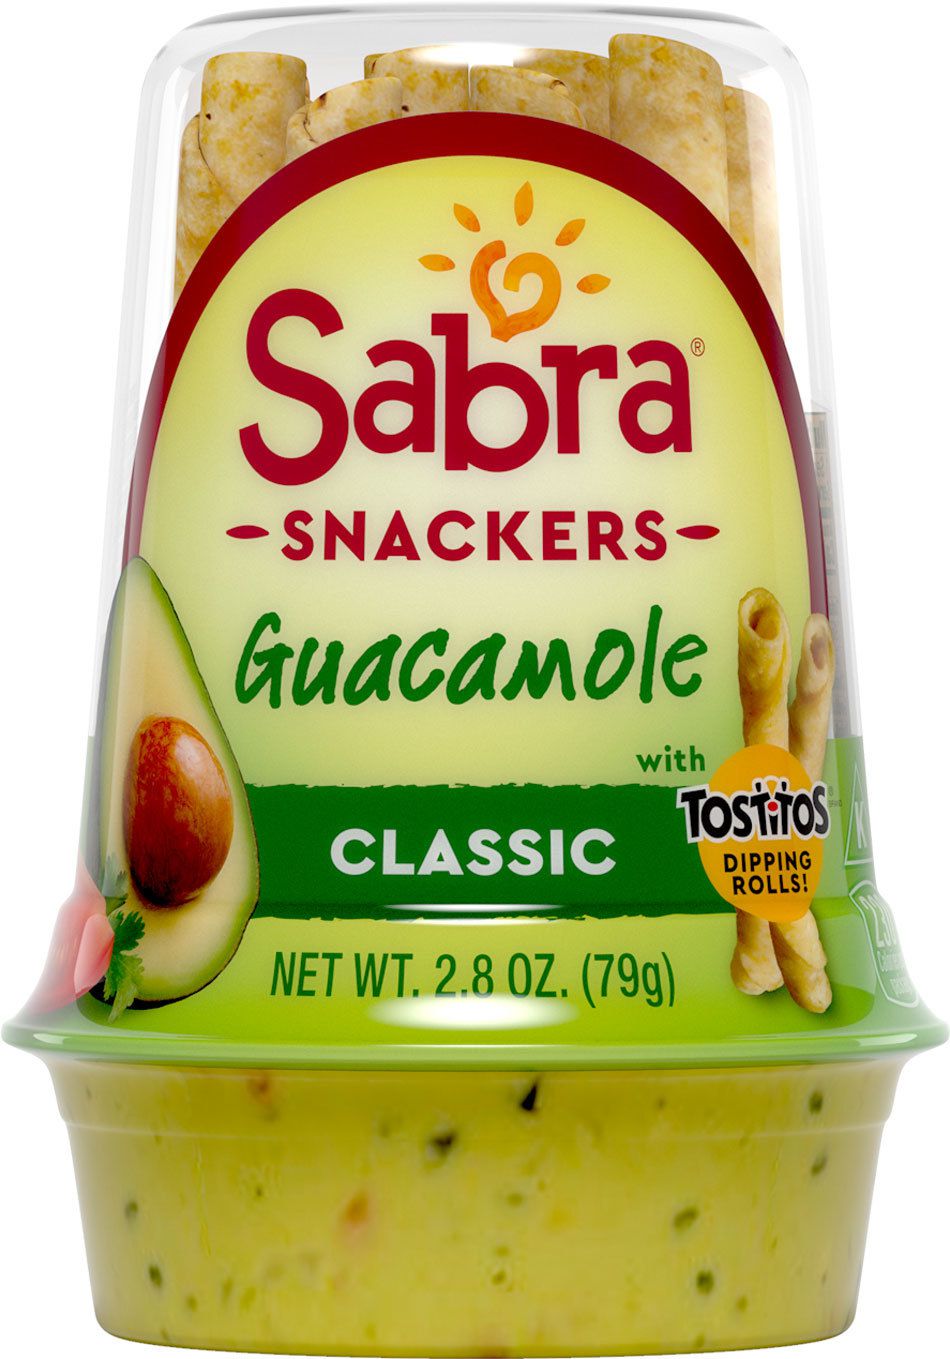 Sabra Snackers Guacamole